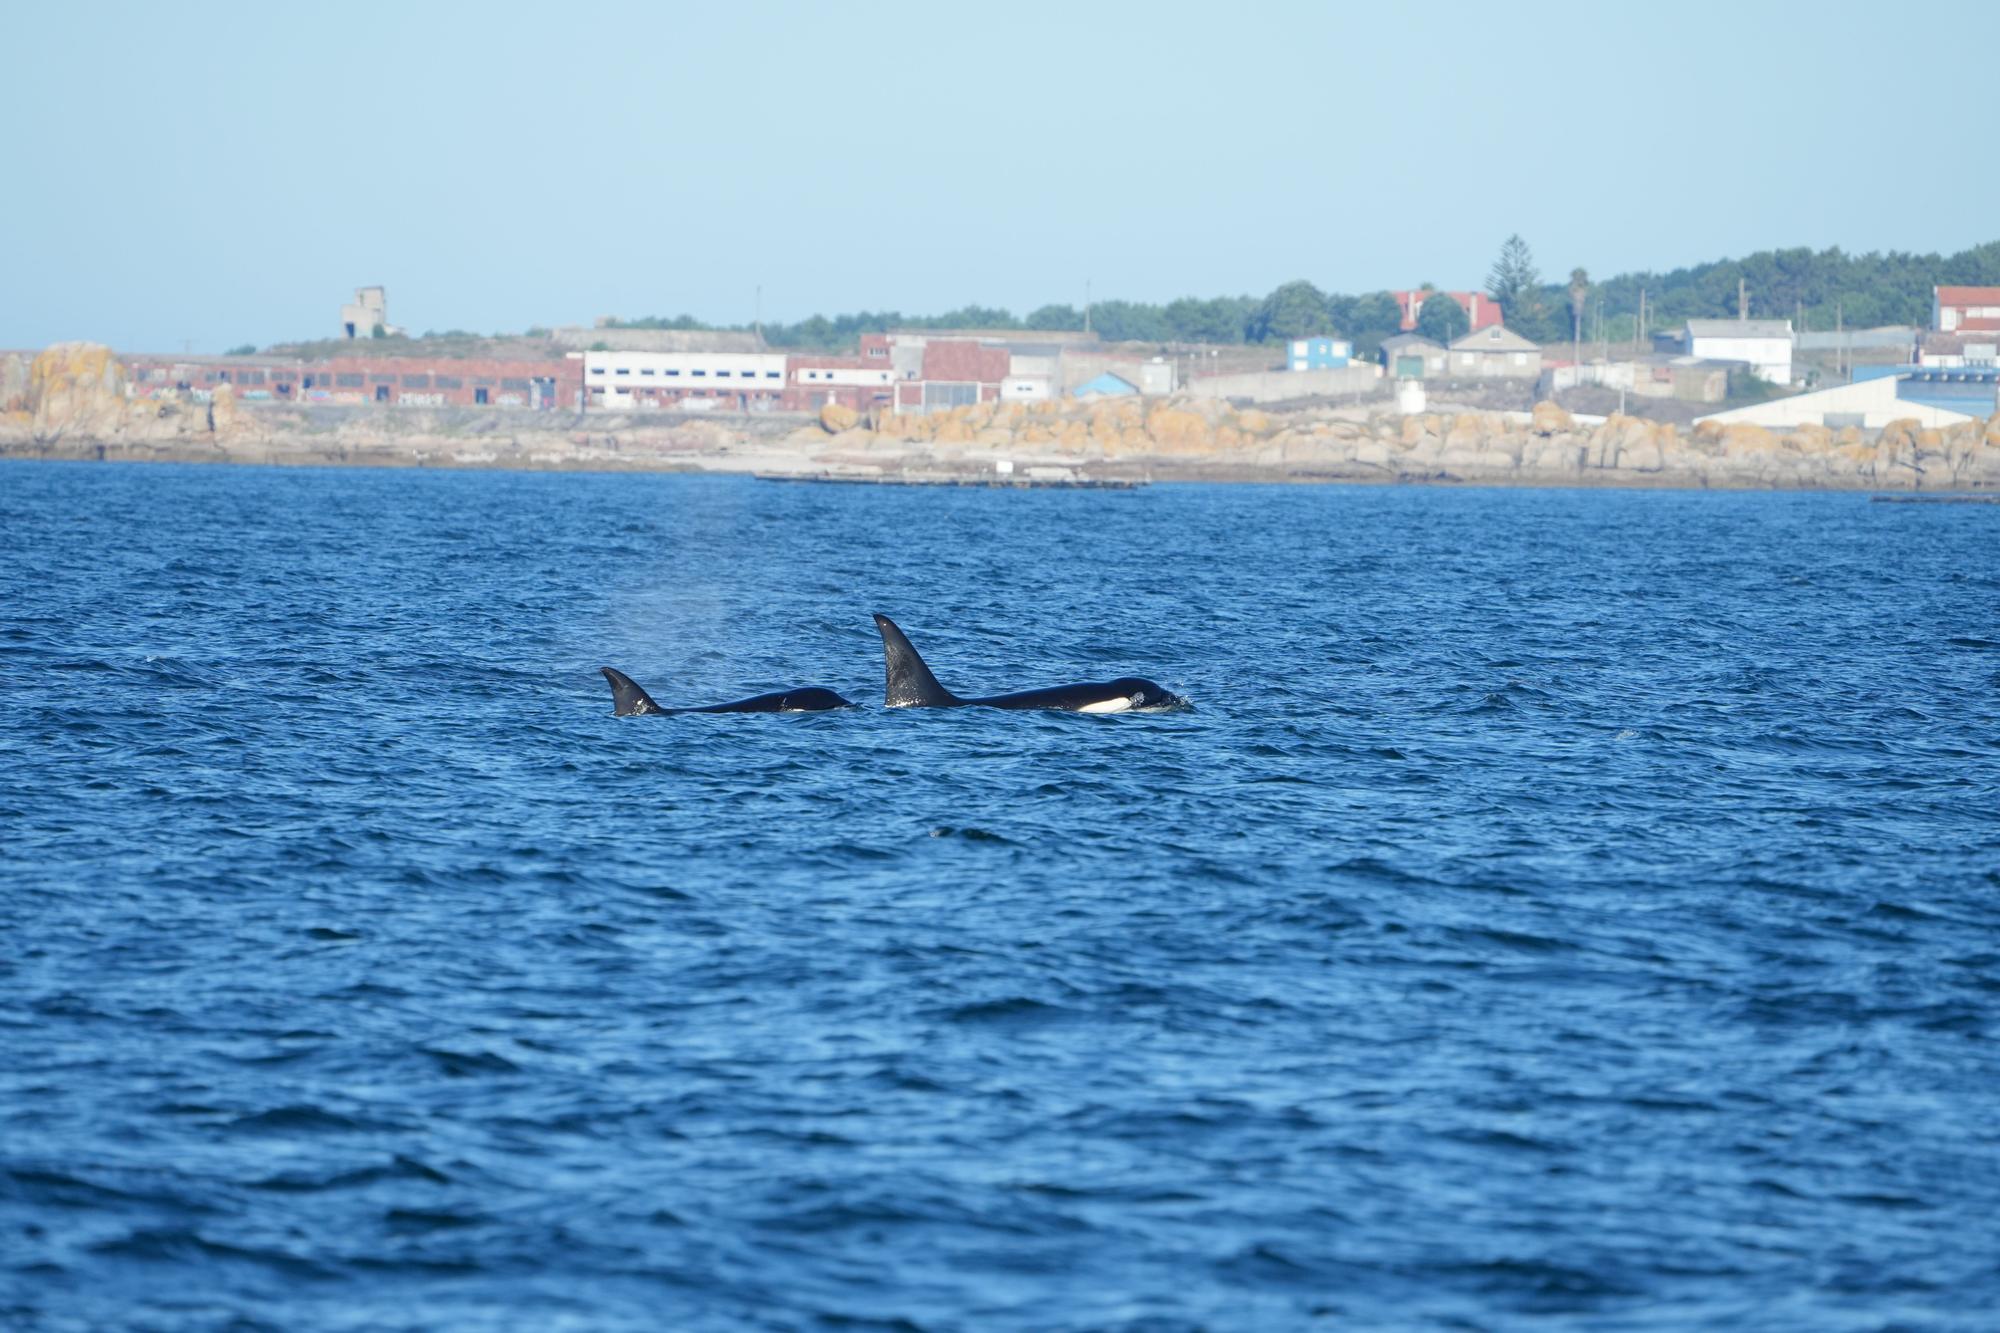 Orcas fotografiadas desde el barco pesquero rehabilitado "Chasula" en aguas de la ría de Arousa. El 20 de agosto de 2023 a la altura de Rúa, Sálvora y la costa de Castiñeiras y Aguiño, en el Concello de Ribeira.